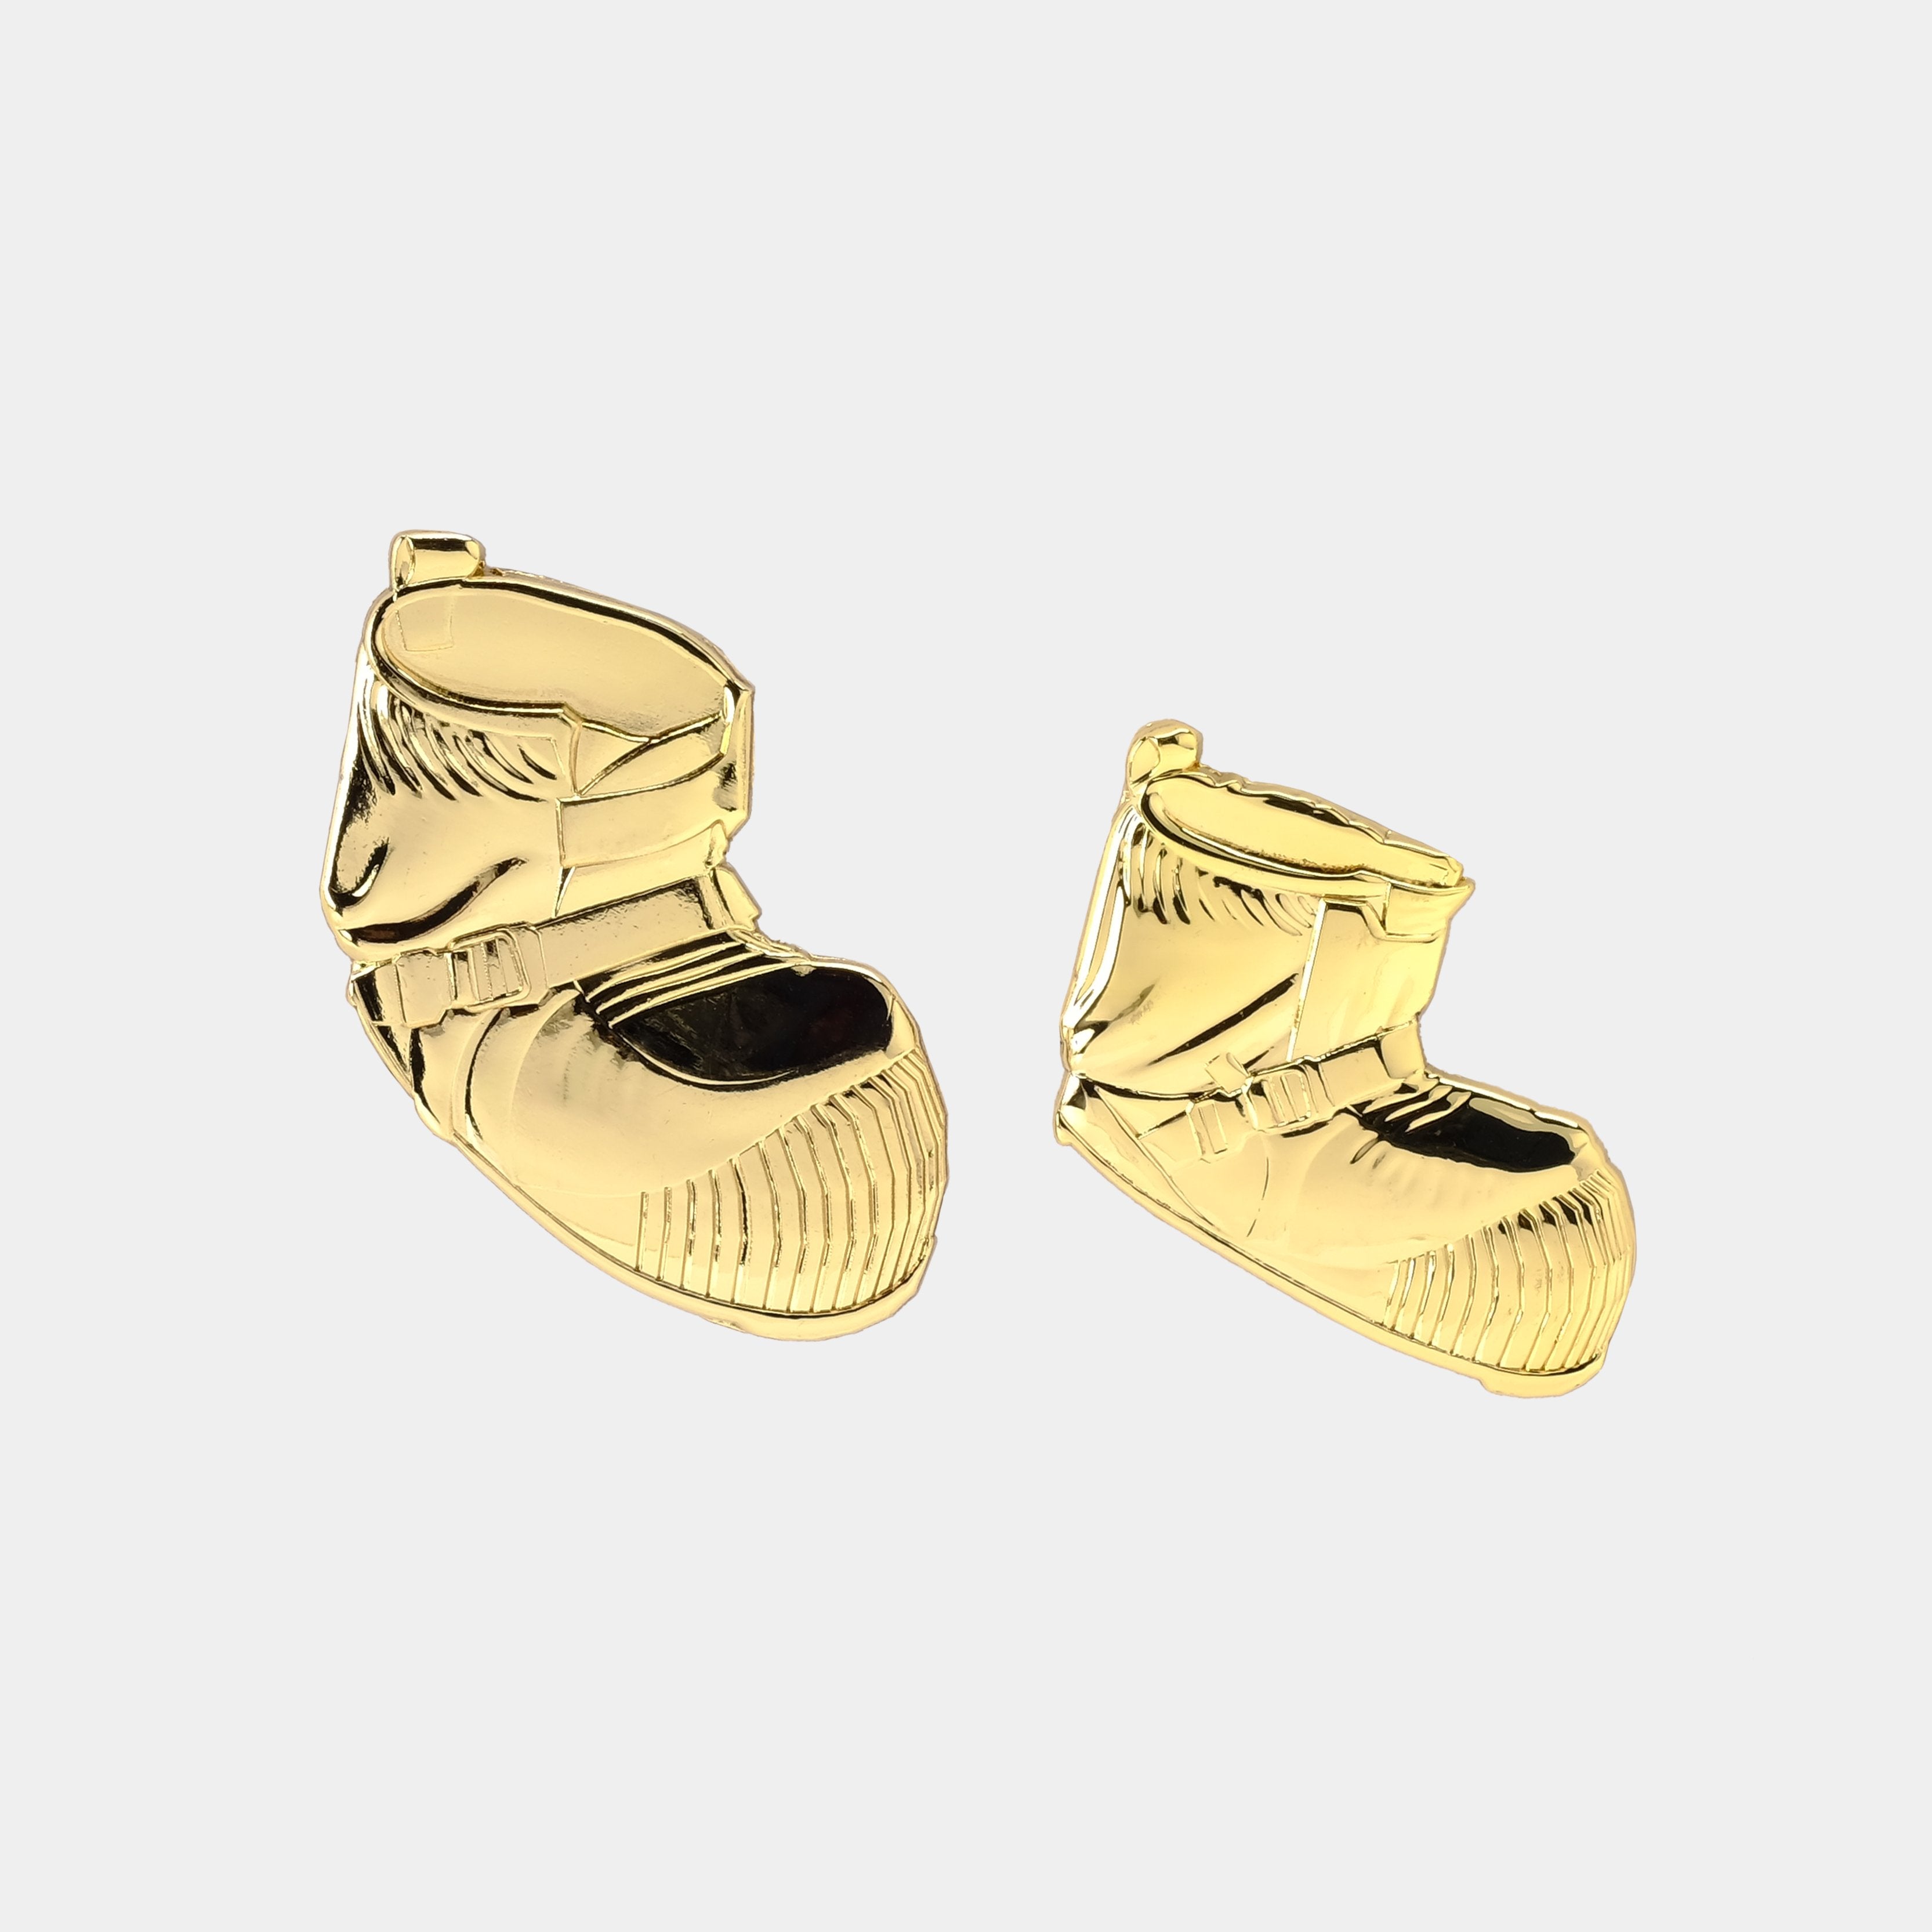 Astronaut Boots 3D Gold Pin Set